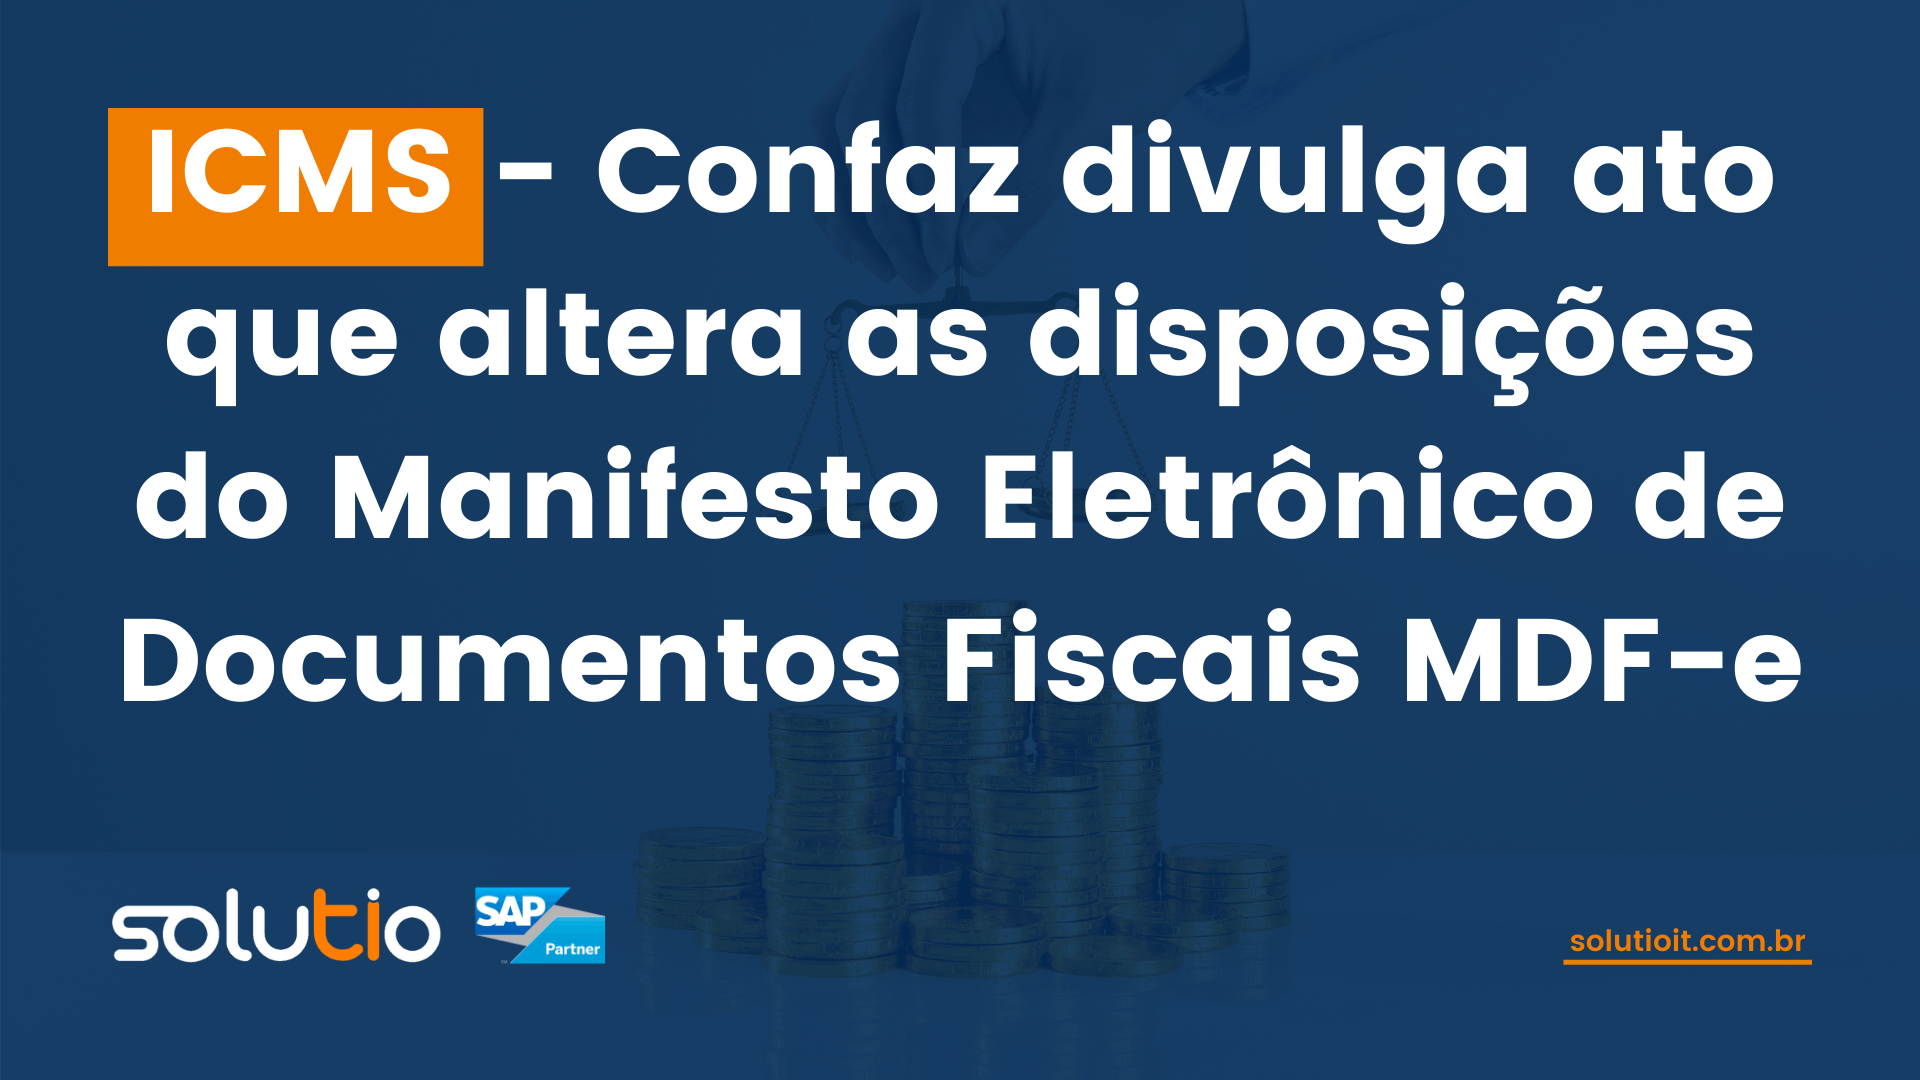 ICMS - Confaz divulga ato que altera as disposições do Manifesto Eletrônico de Documentos Fiscais MDF-e